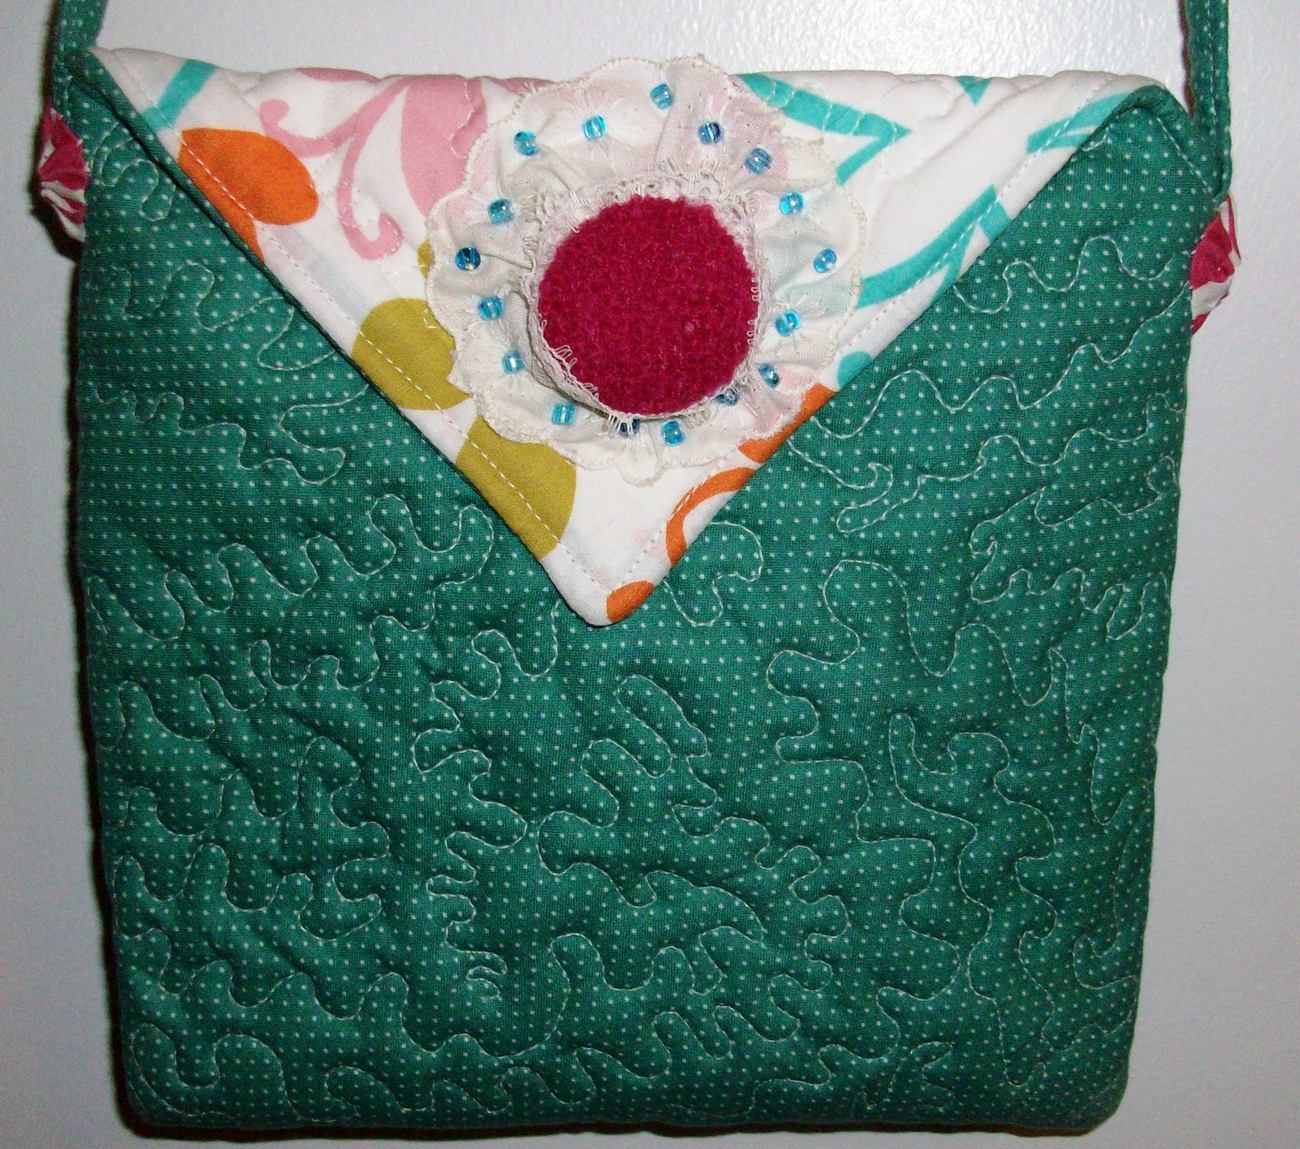 Handmade and Quilted Purse Handbag Original Design by Pursephoric Brand ...